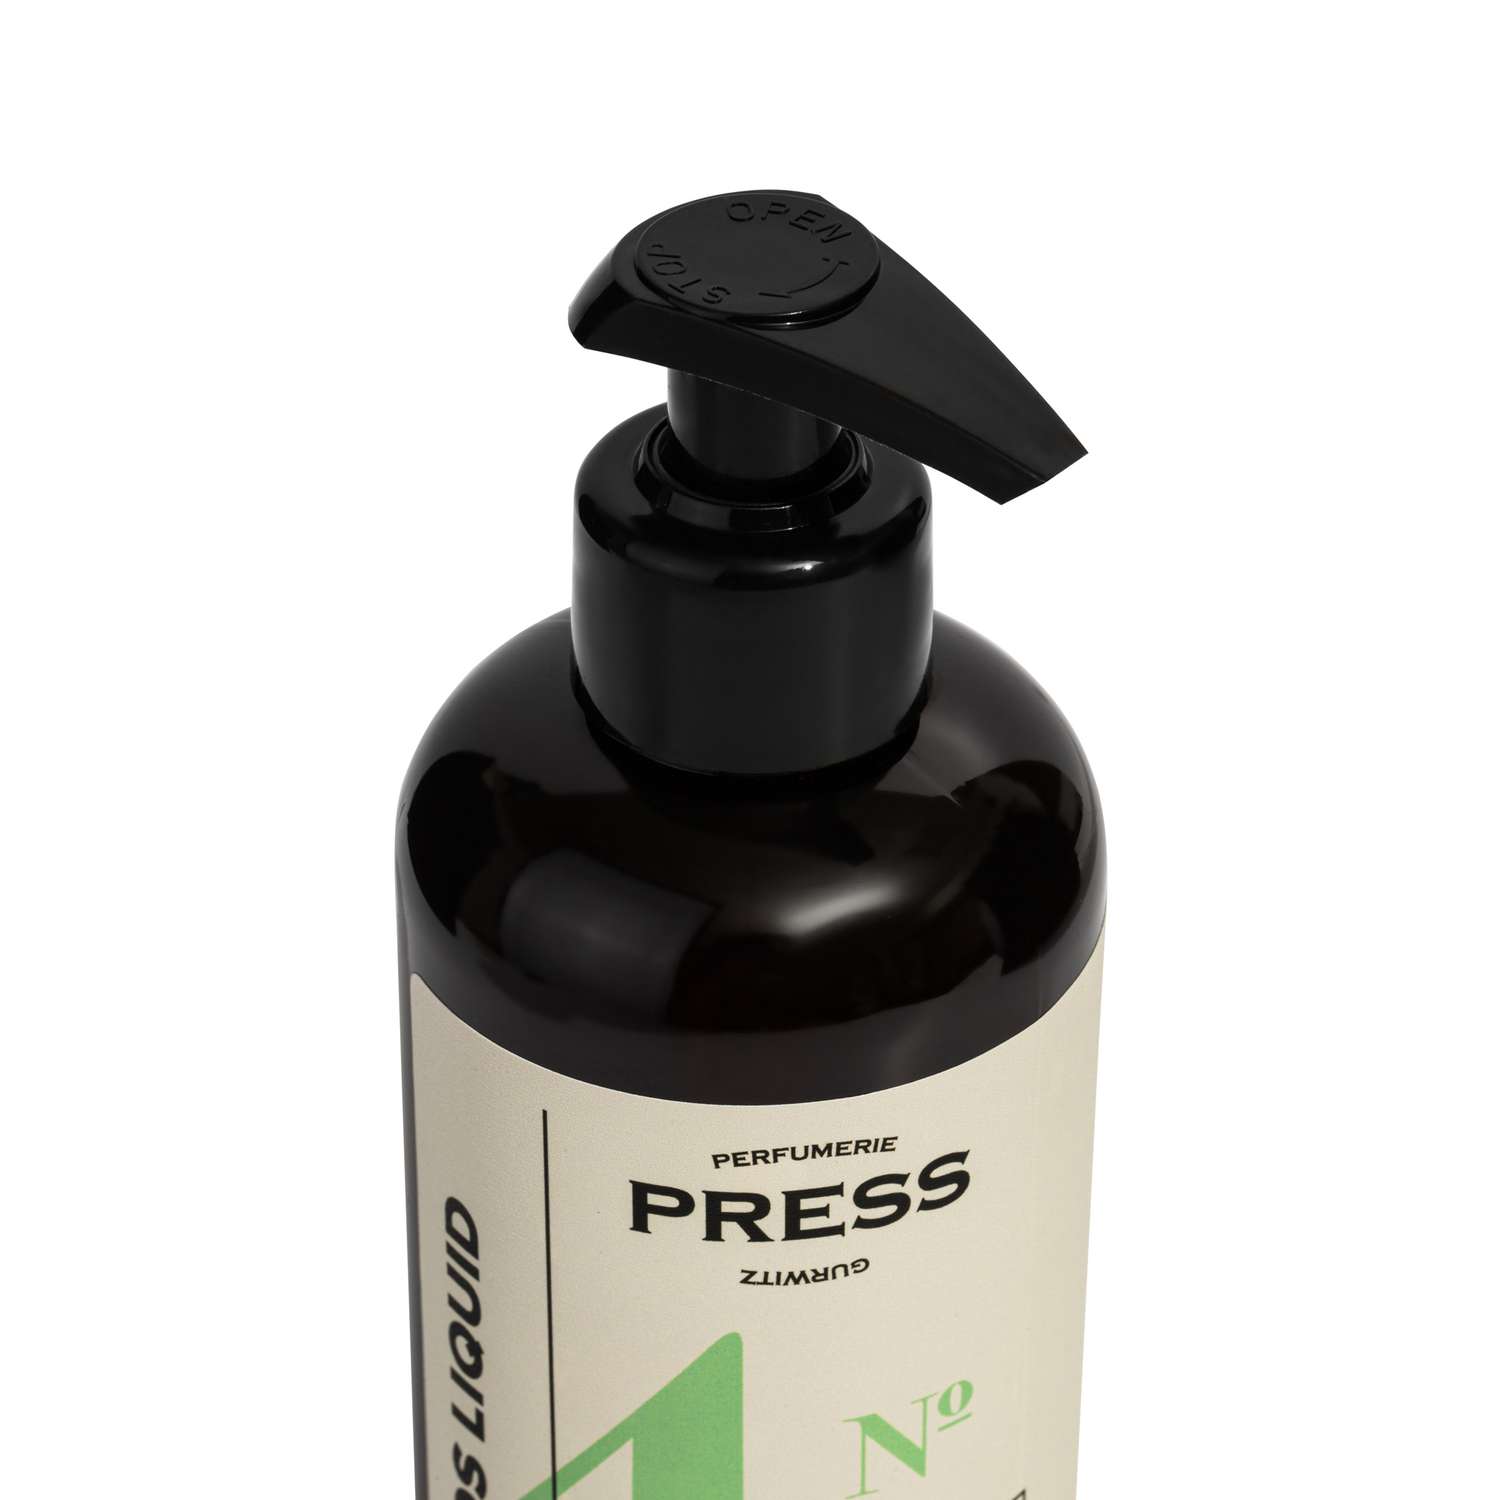 Жидкое мыло для рук №4 Press Gurwitz Perfumerie парфюмированное с Бергамот Инжир Мускус натуральное - фото 2